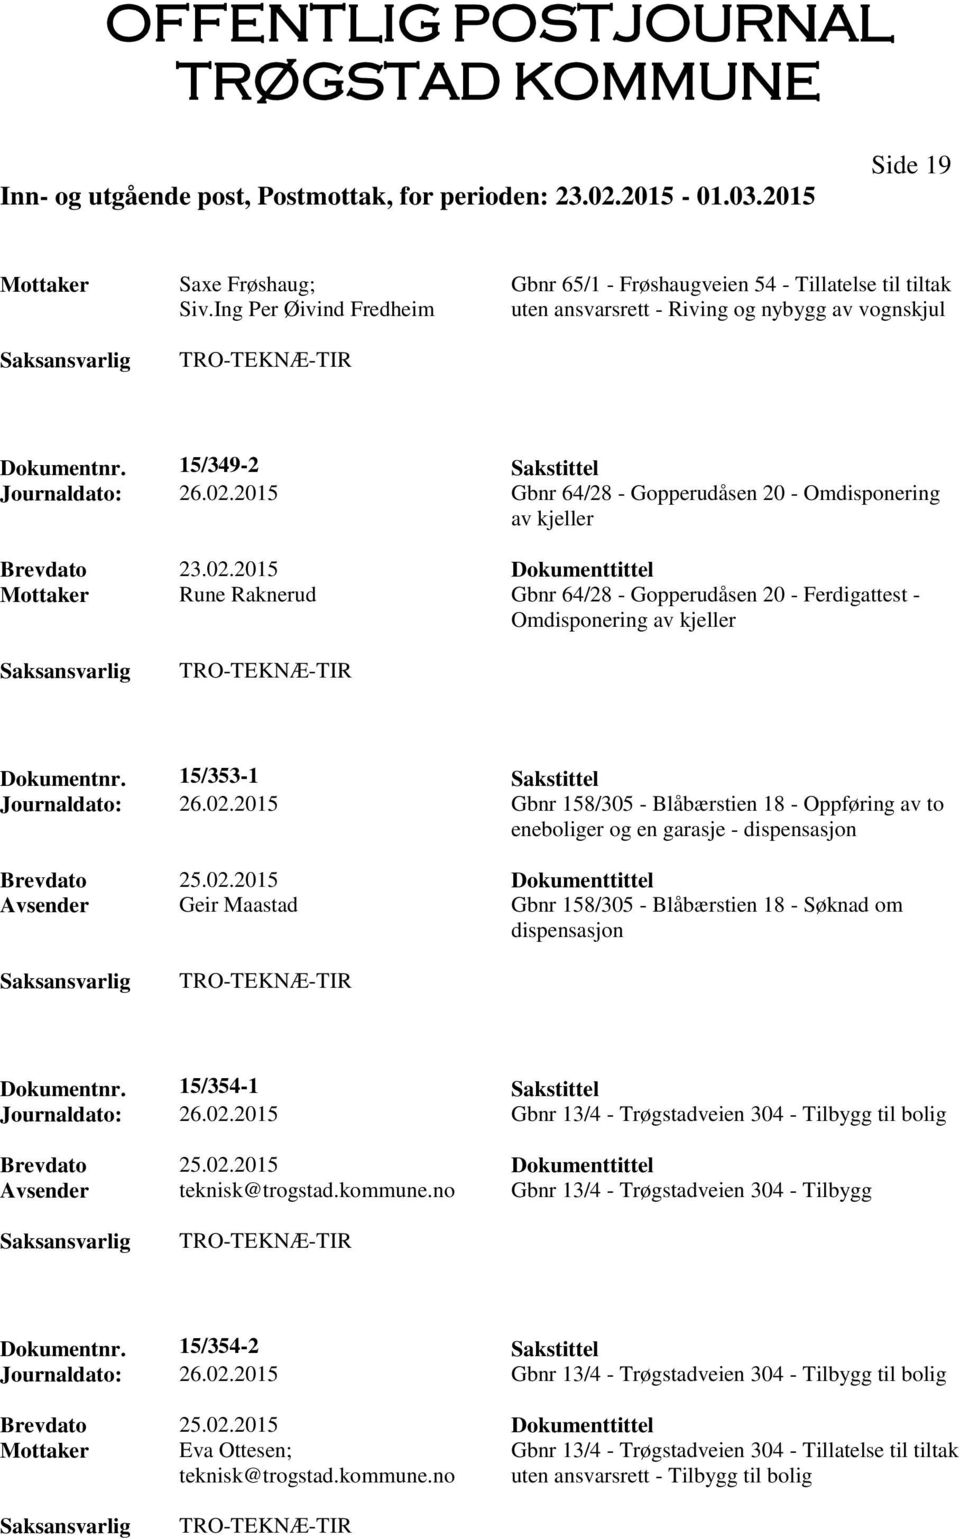 2015 Gbnr 64/28 - Gopperudåsen 20 - Omdisponering av kjeller Mottaker Rune Raknerud Gbnr 64/28 - Gopperudåsen 20 - Ferdigattest - Omdisponering av kjeller Dokumentnr.